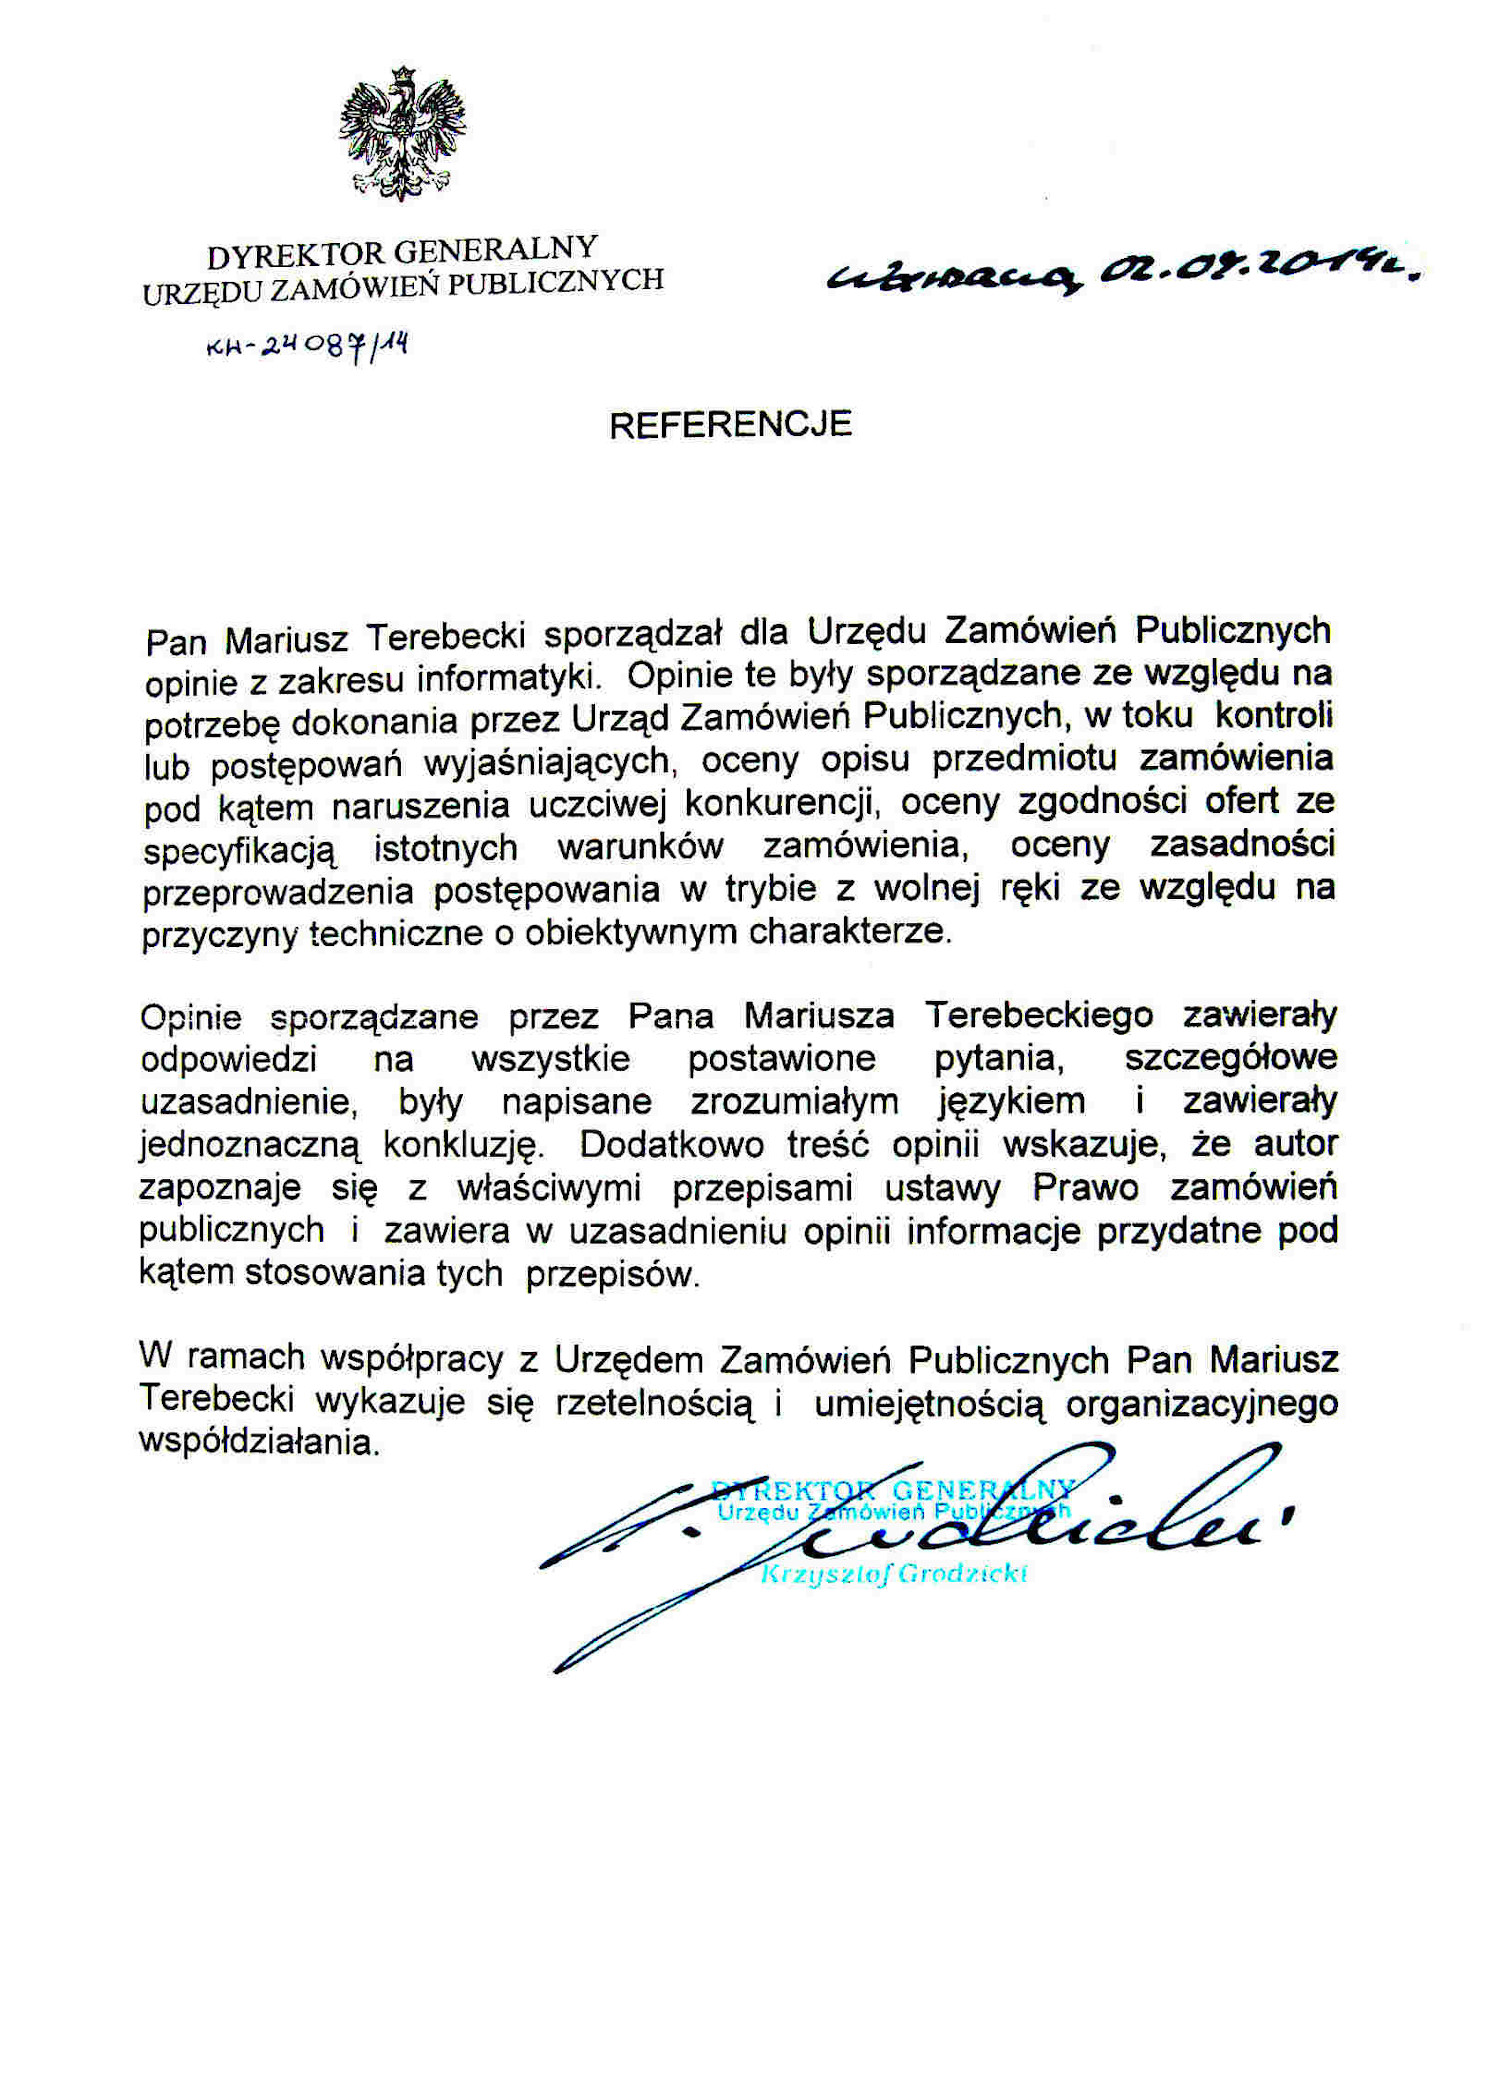 Referencje Dyrektora Generalnego UZP - 2014 r.